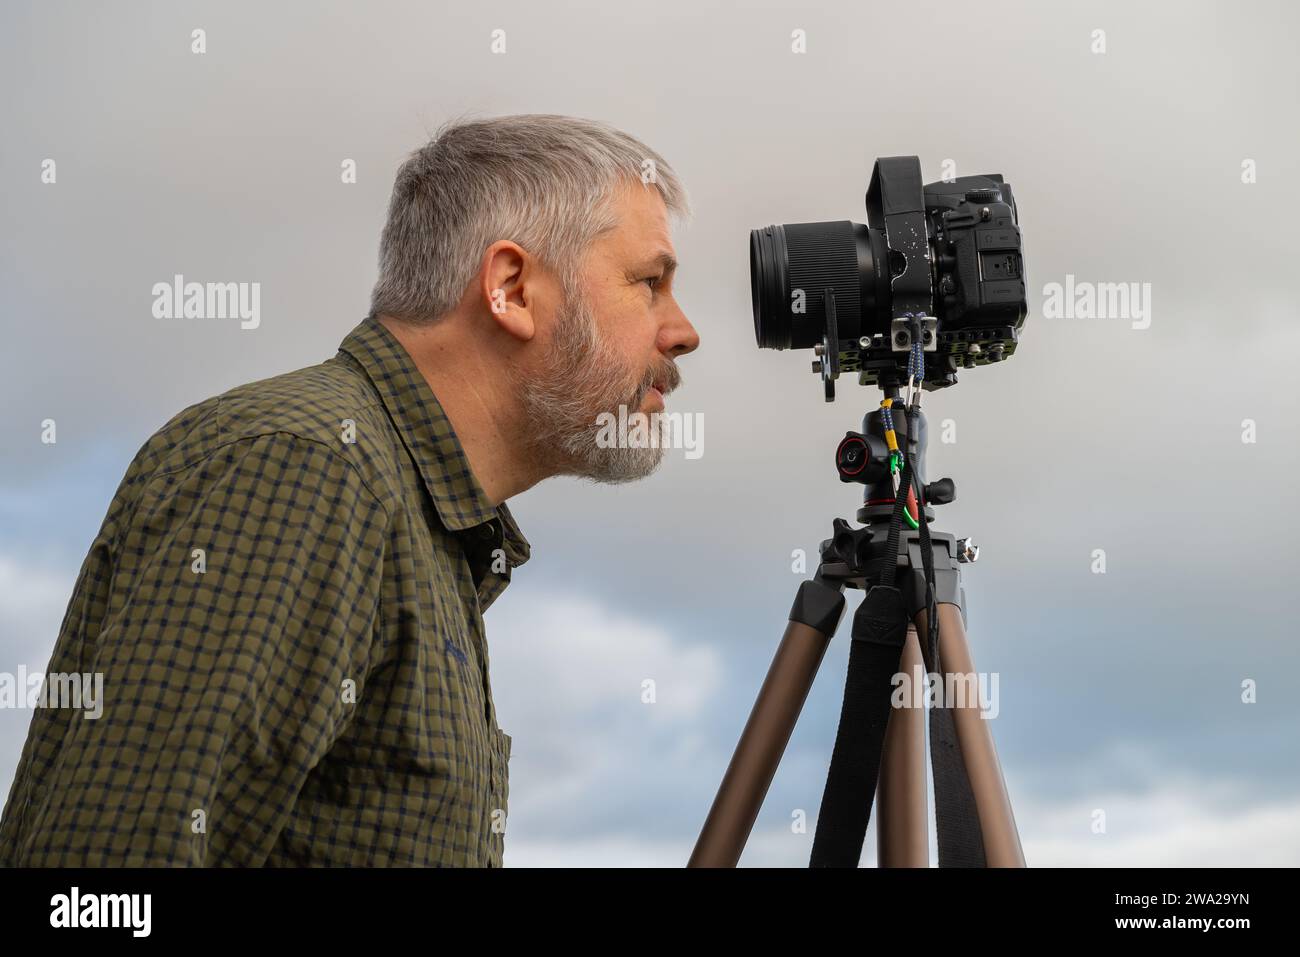 Photographe, cheveux gris et barbe pleine, 56 ans, regardant dans son appareil reflex 35mm sur le trépied, ciel couvert gris Banque D'Images